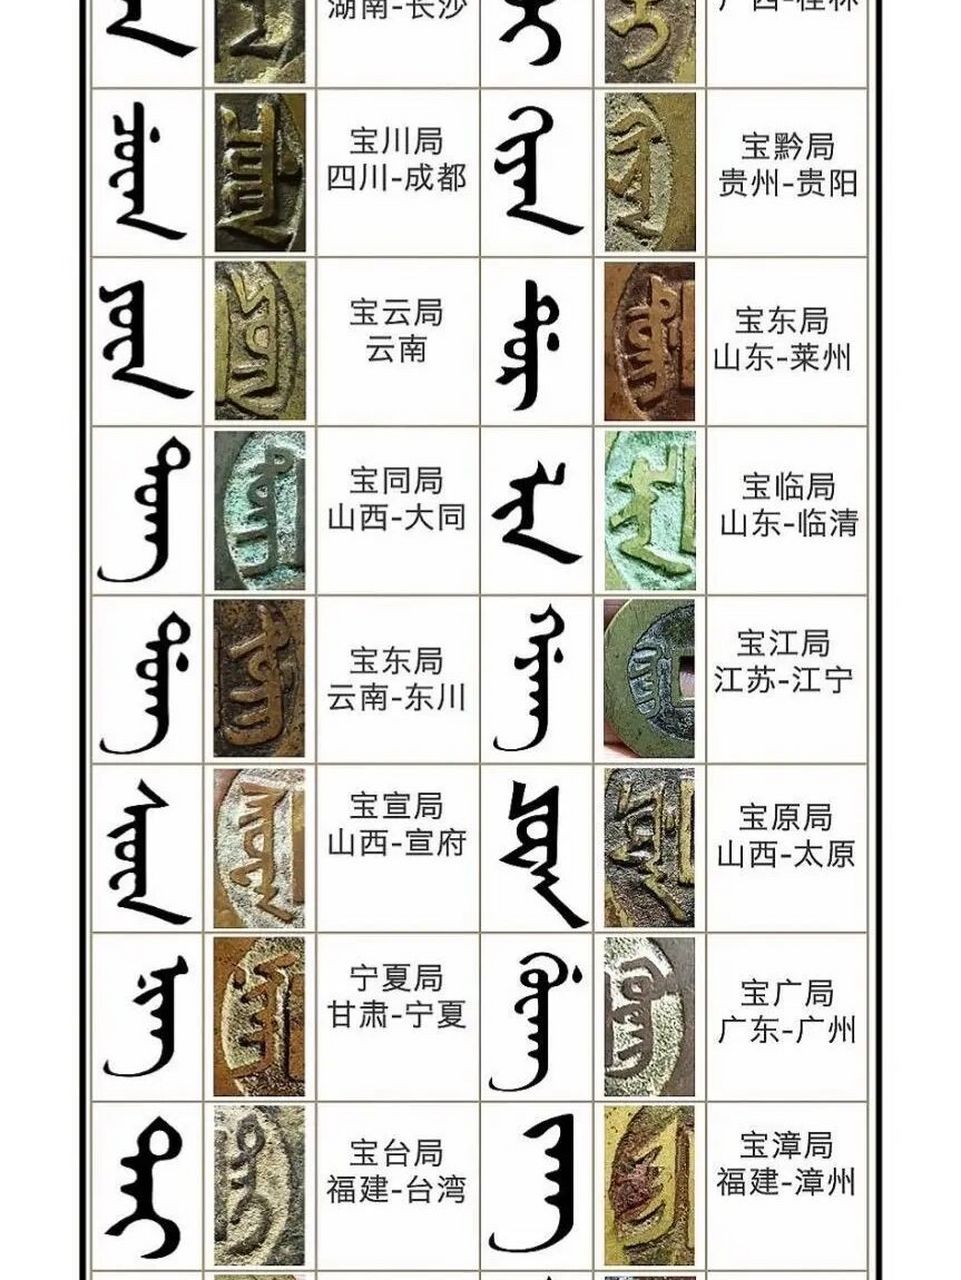 二十四局满汉文对照表图片